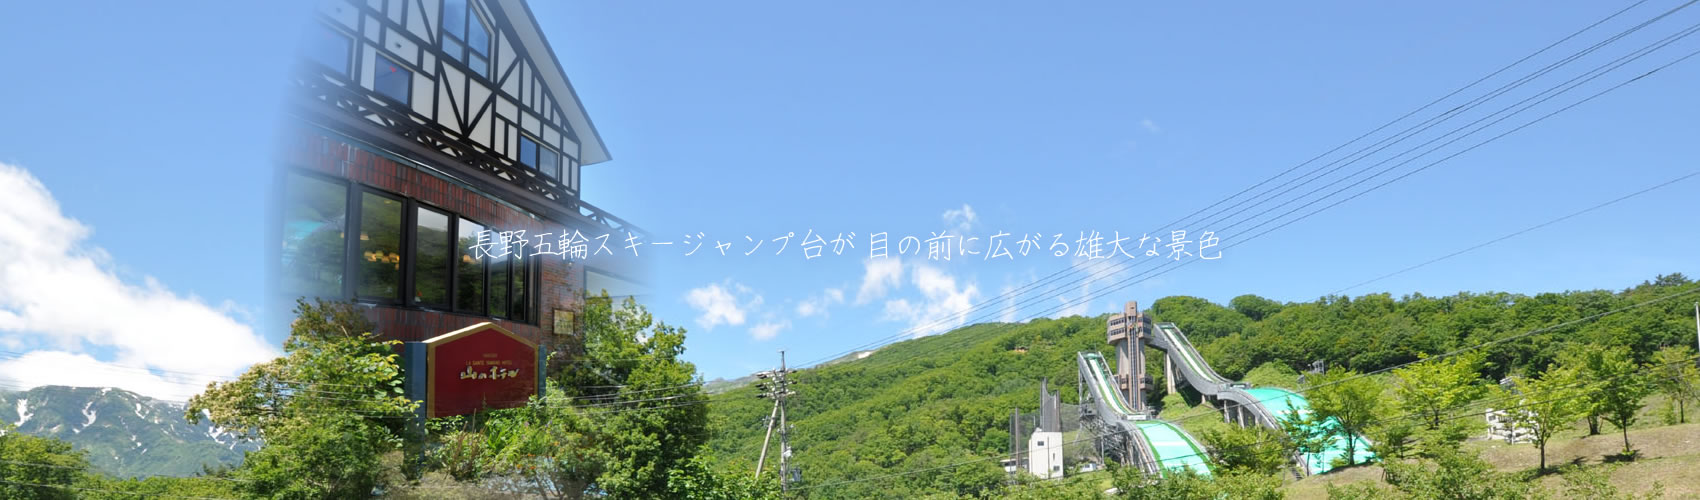 長野五輪スキージャンプ台が目の前に広がる雄大な景色